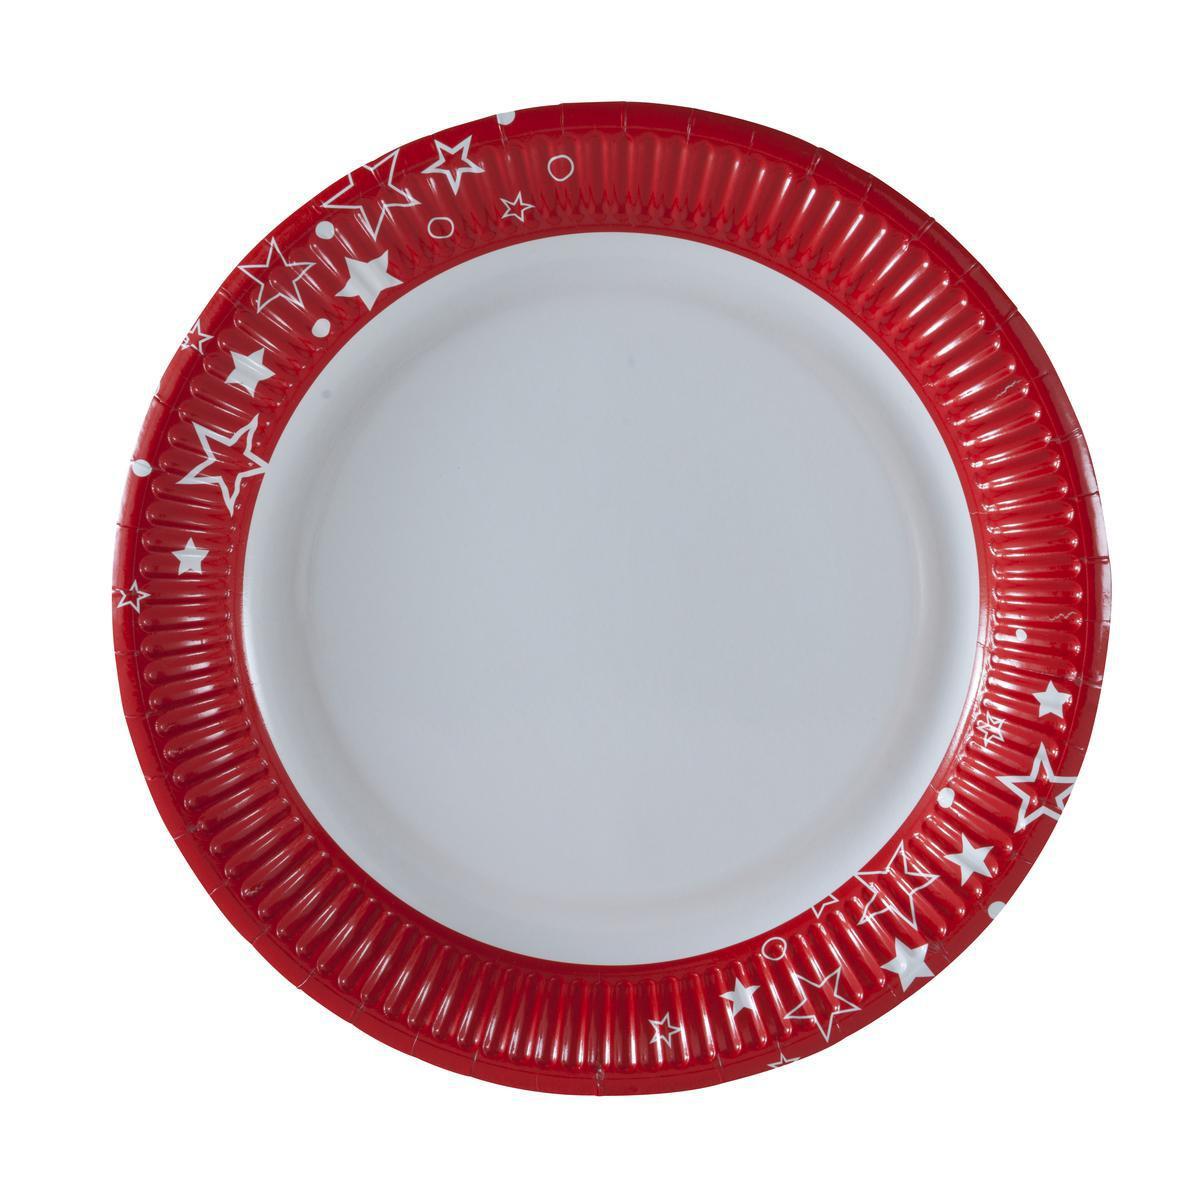 Lot de 10 assiettes rondes - Carton - Diamètre 23 cm - Rouge et blanc